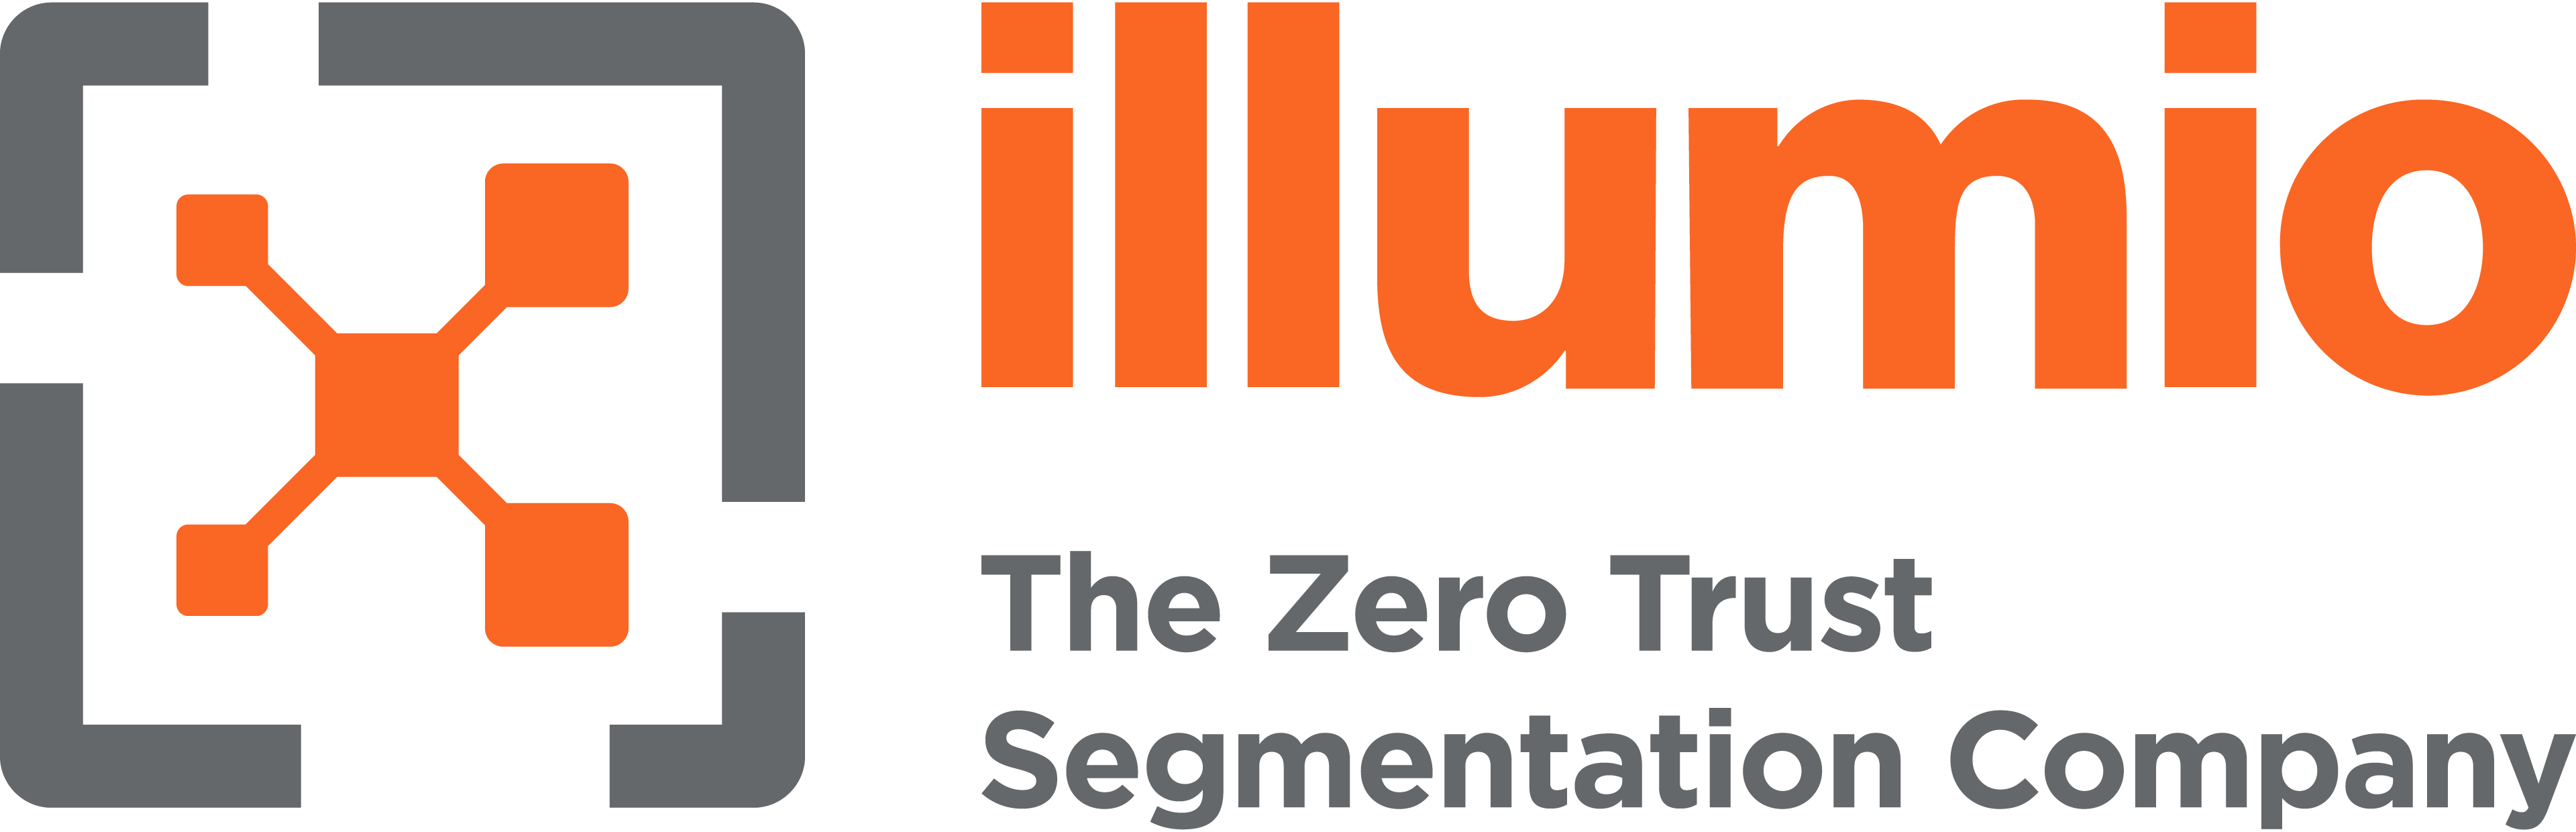 Illumio_Tagline_Logo_Gray_Orange_RGB